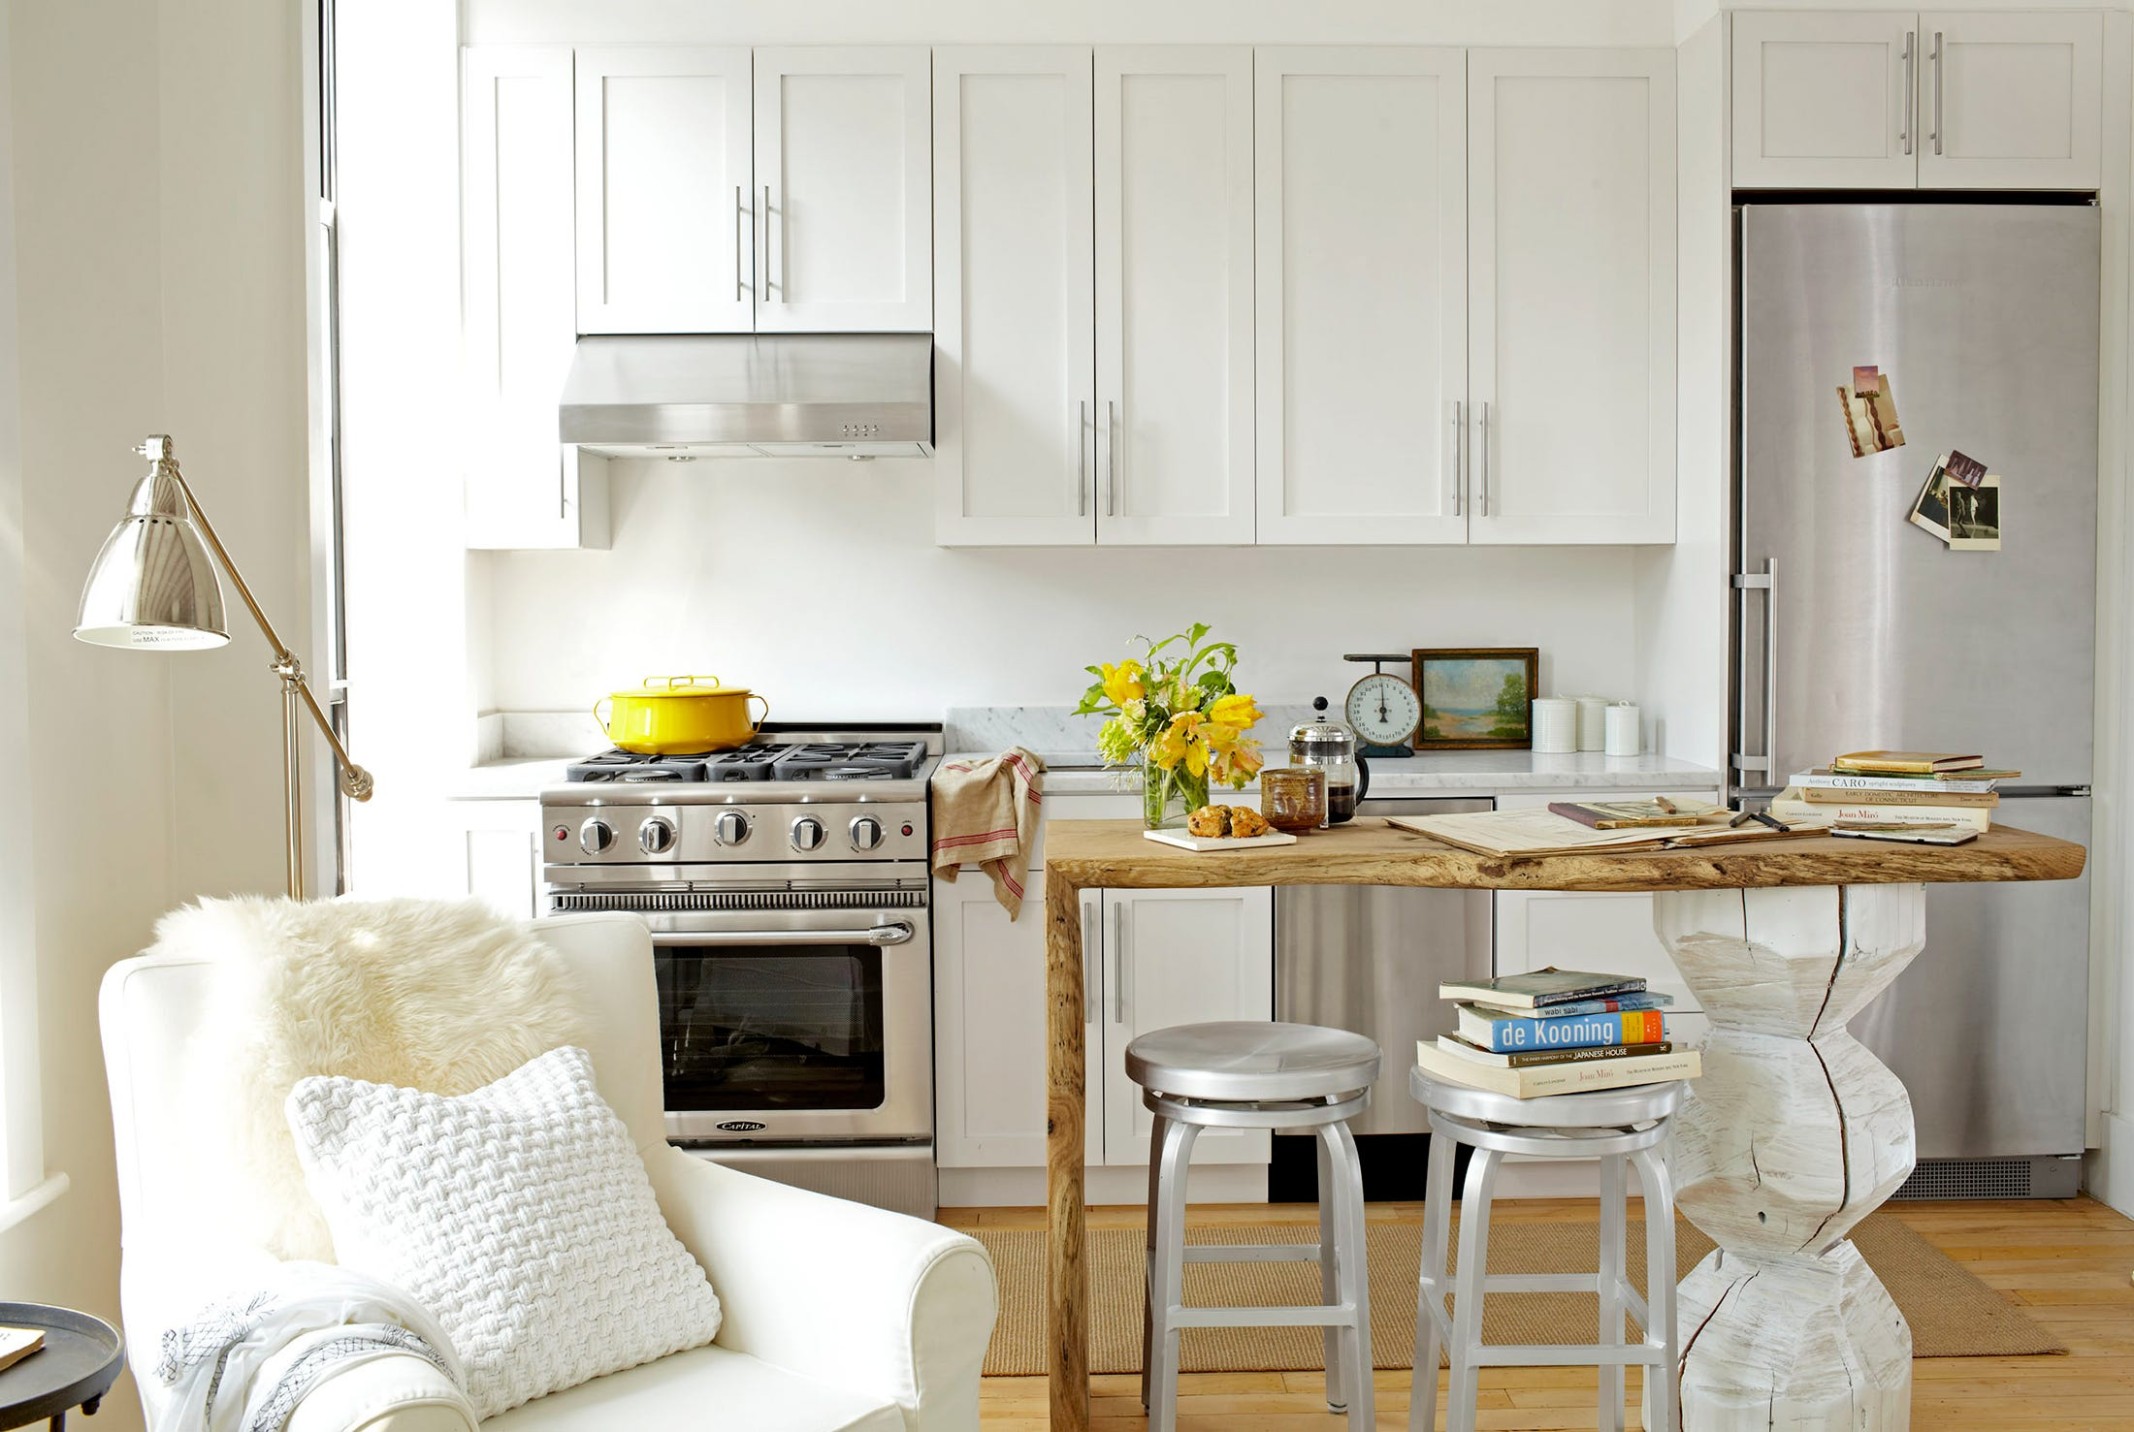 6 Best Small Kitchen Design Ideas - Decor Solutions for Small  - kitchen remodel ideas pictures for small kitchens